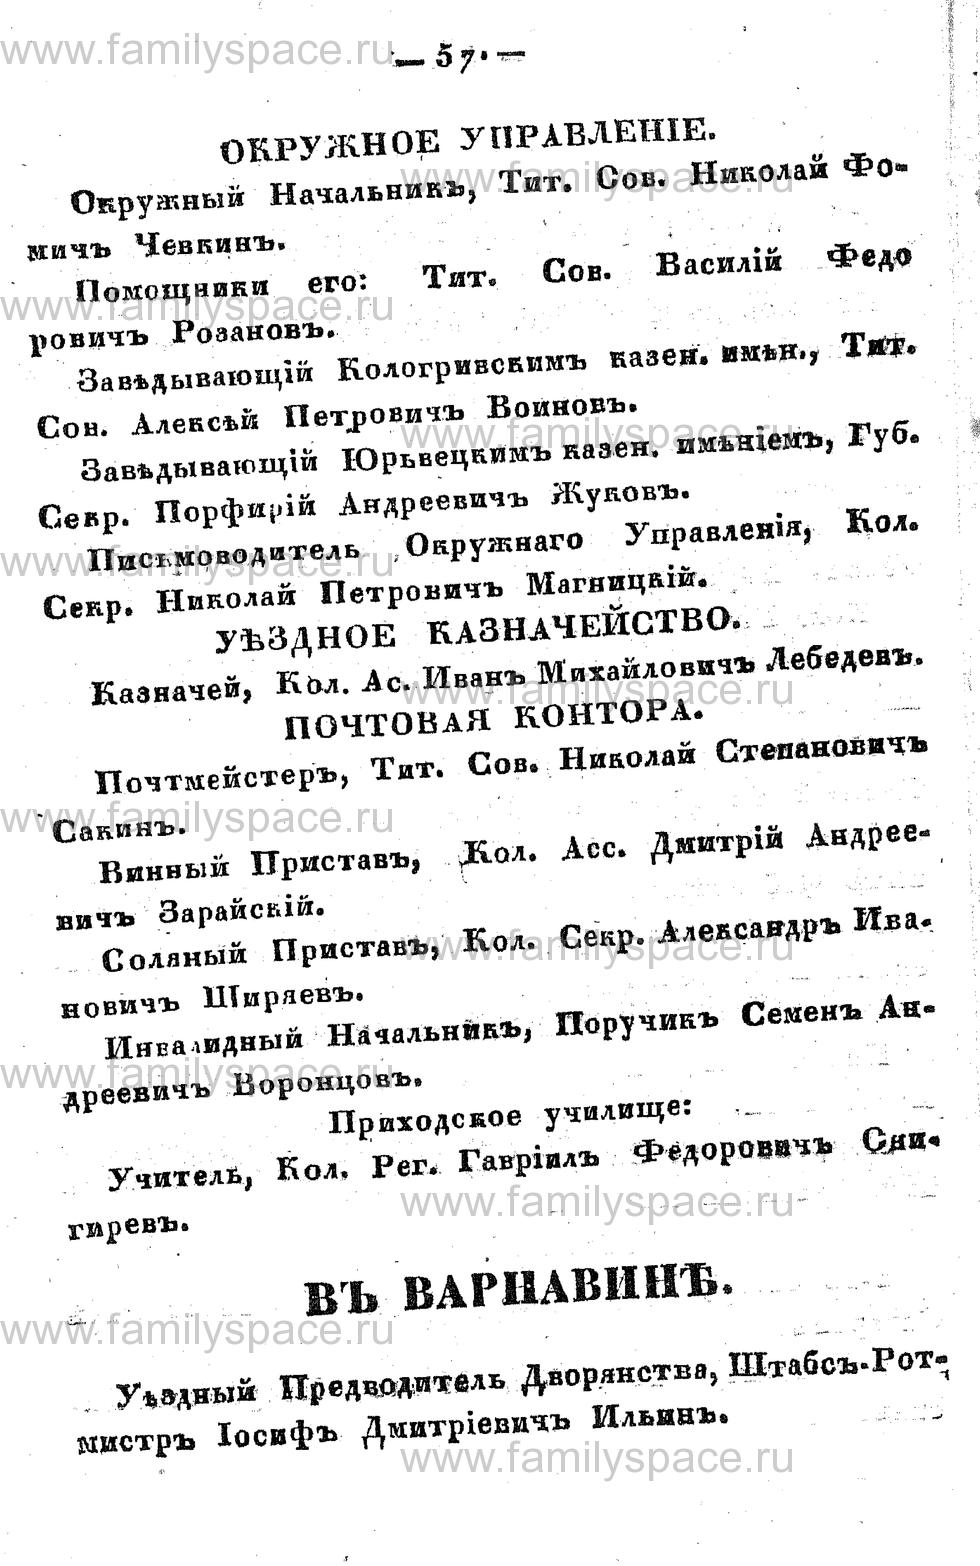 Поиск по фамилии - Памятная книжка Костромской губернии на 1857 год, страница 57